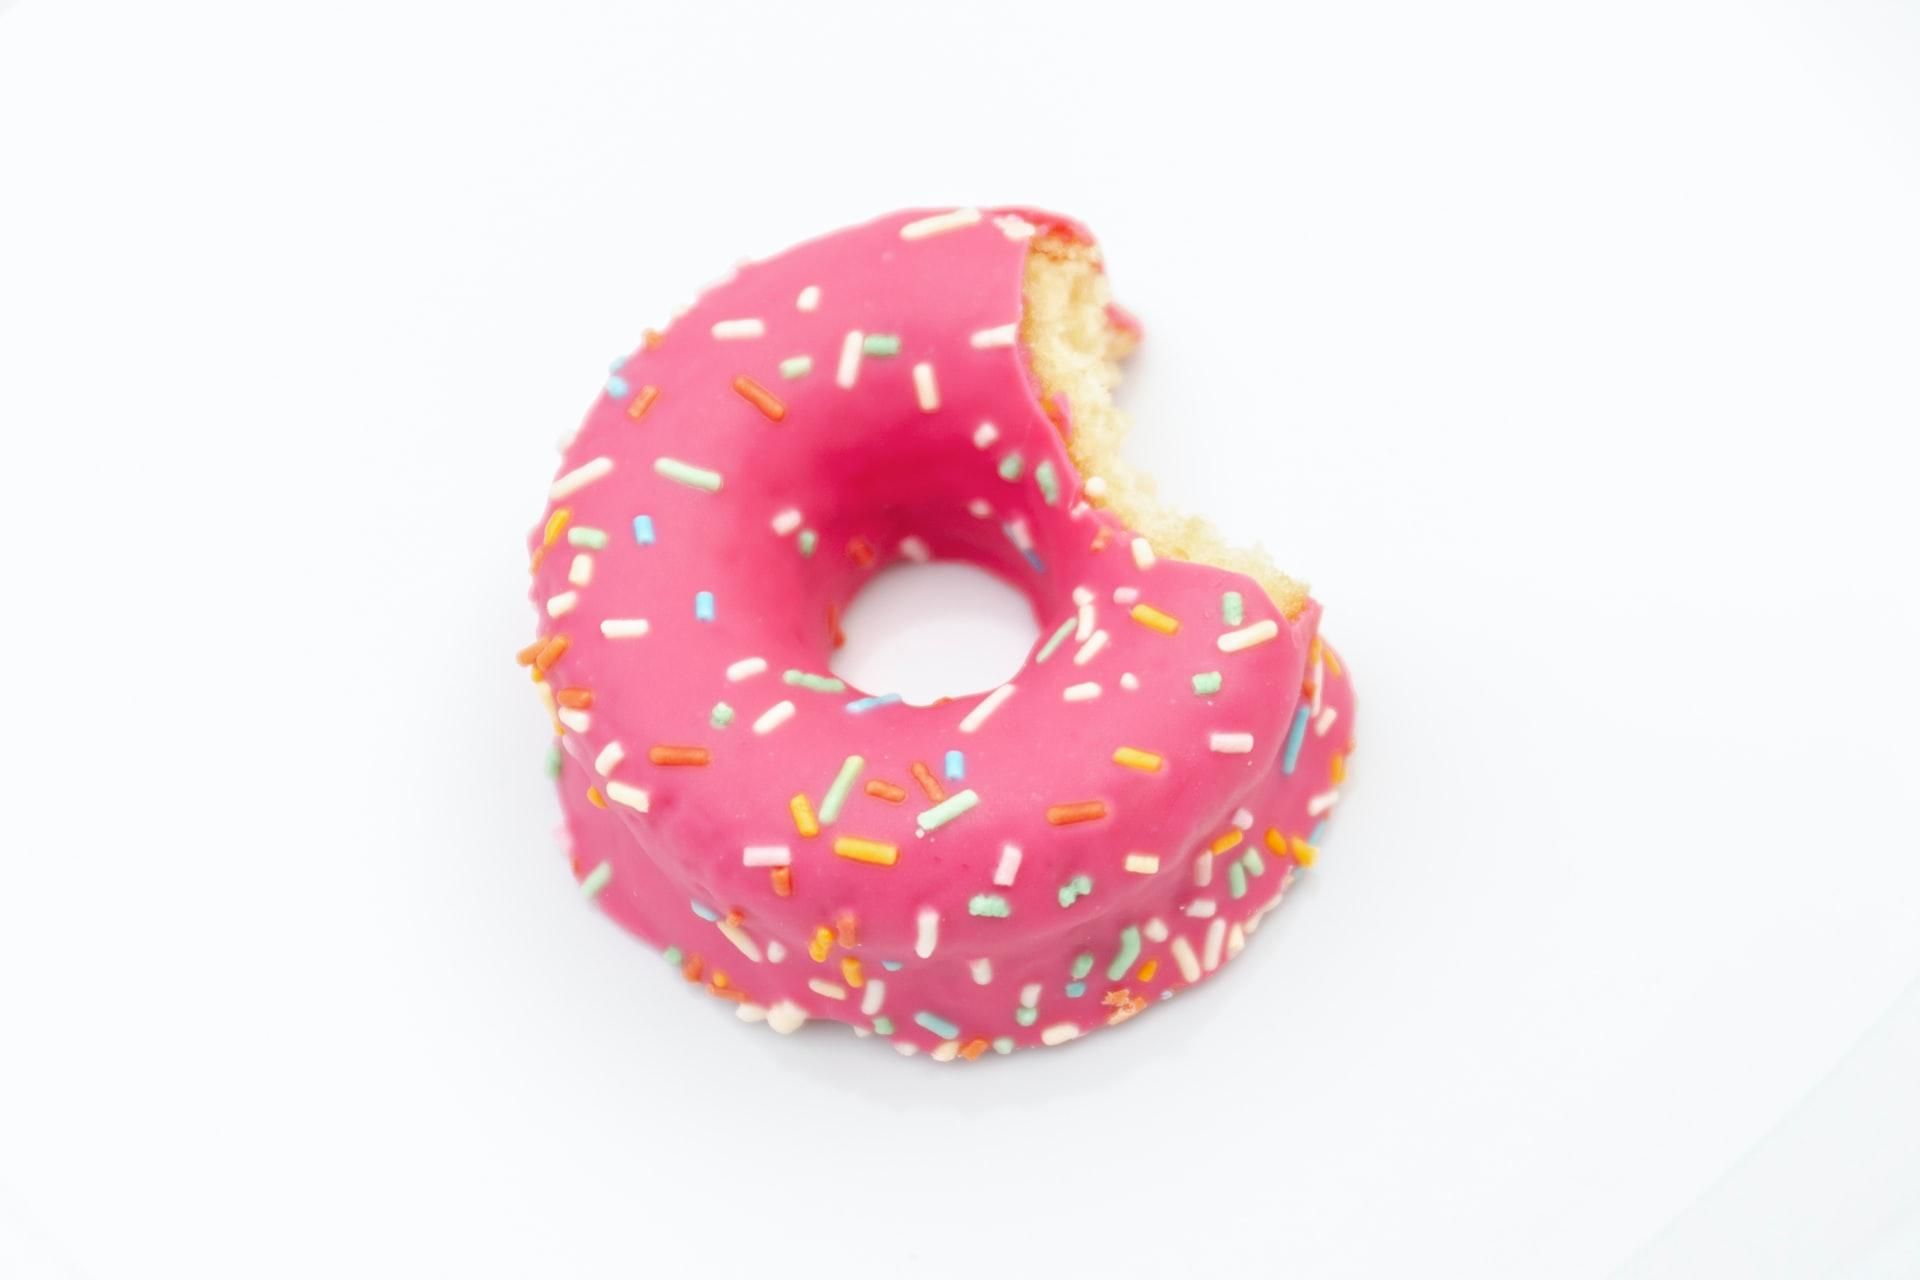 Осталось лишь отверстие от бублика: Dunkin' Donuts остановила работу и инвестиции в России